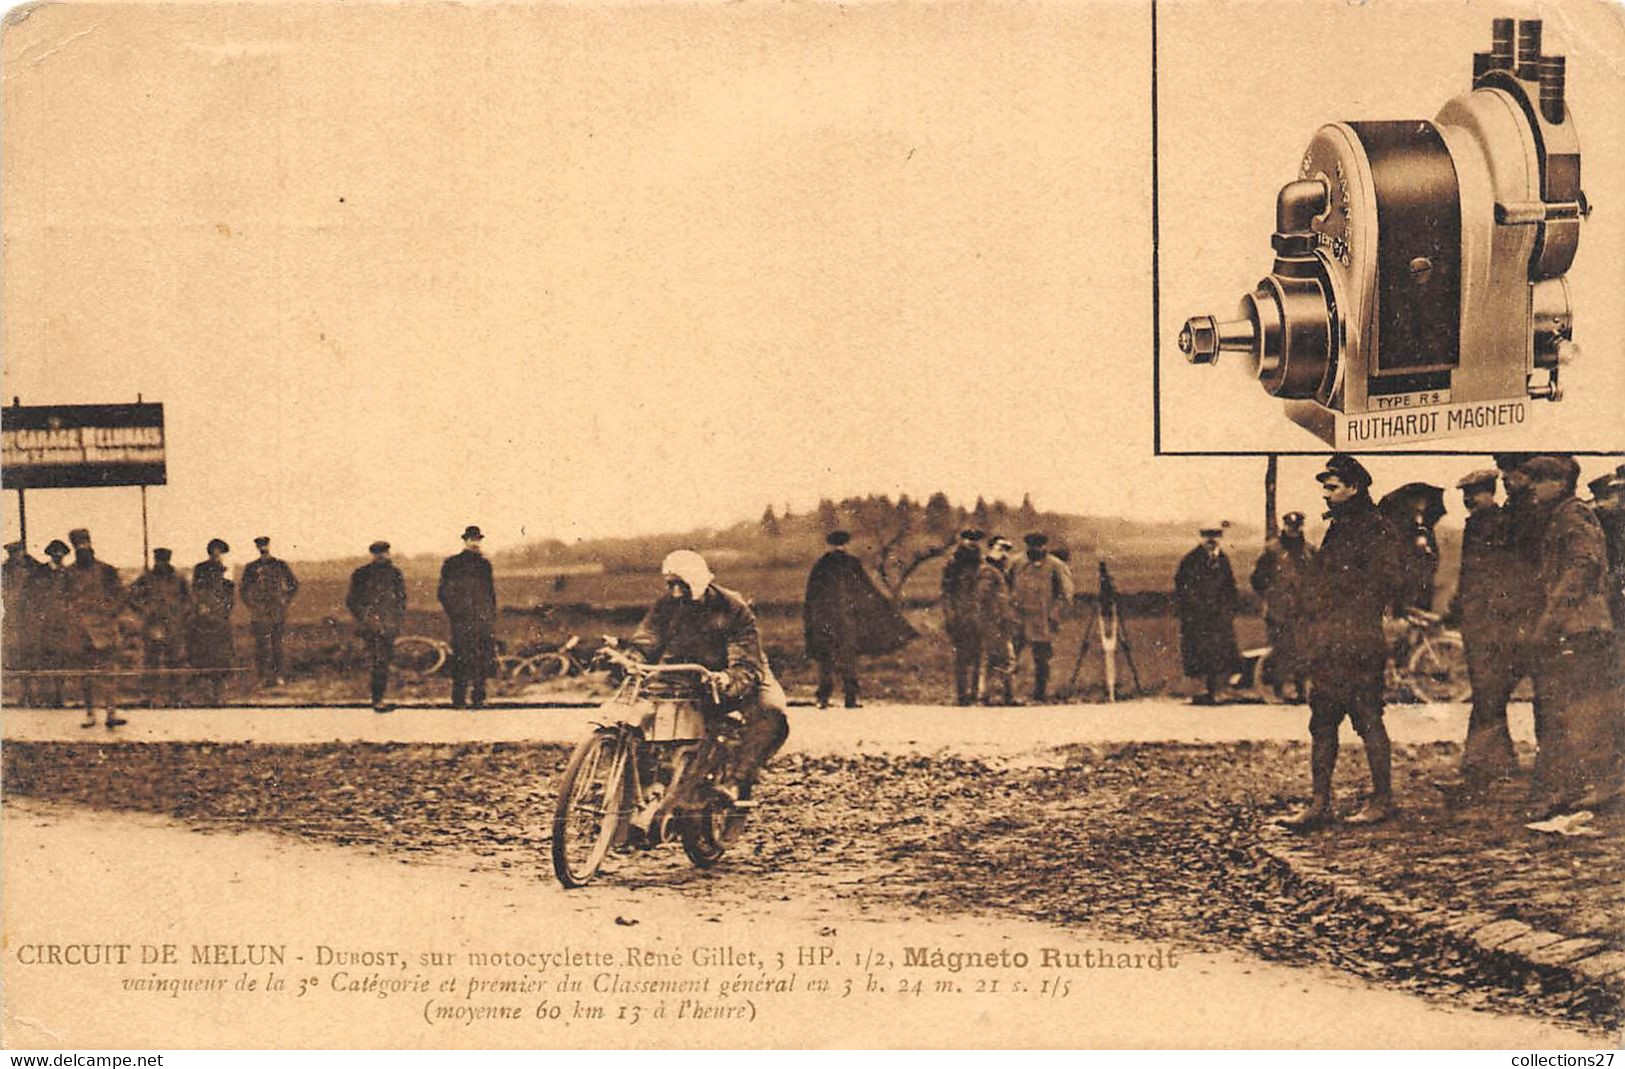 CIRCUIT DE MELUN- DUROST SUR MOTOCYCLETTE RENE GILLET- 3 HP - 1/2 MAGNETO RUTHARDT- VAINQUEUR DE LA 3e CATEGORIE - Sport Moto